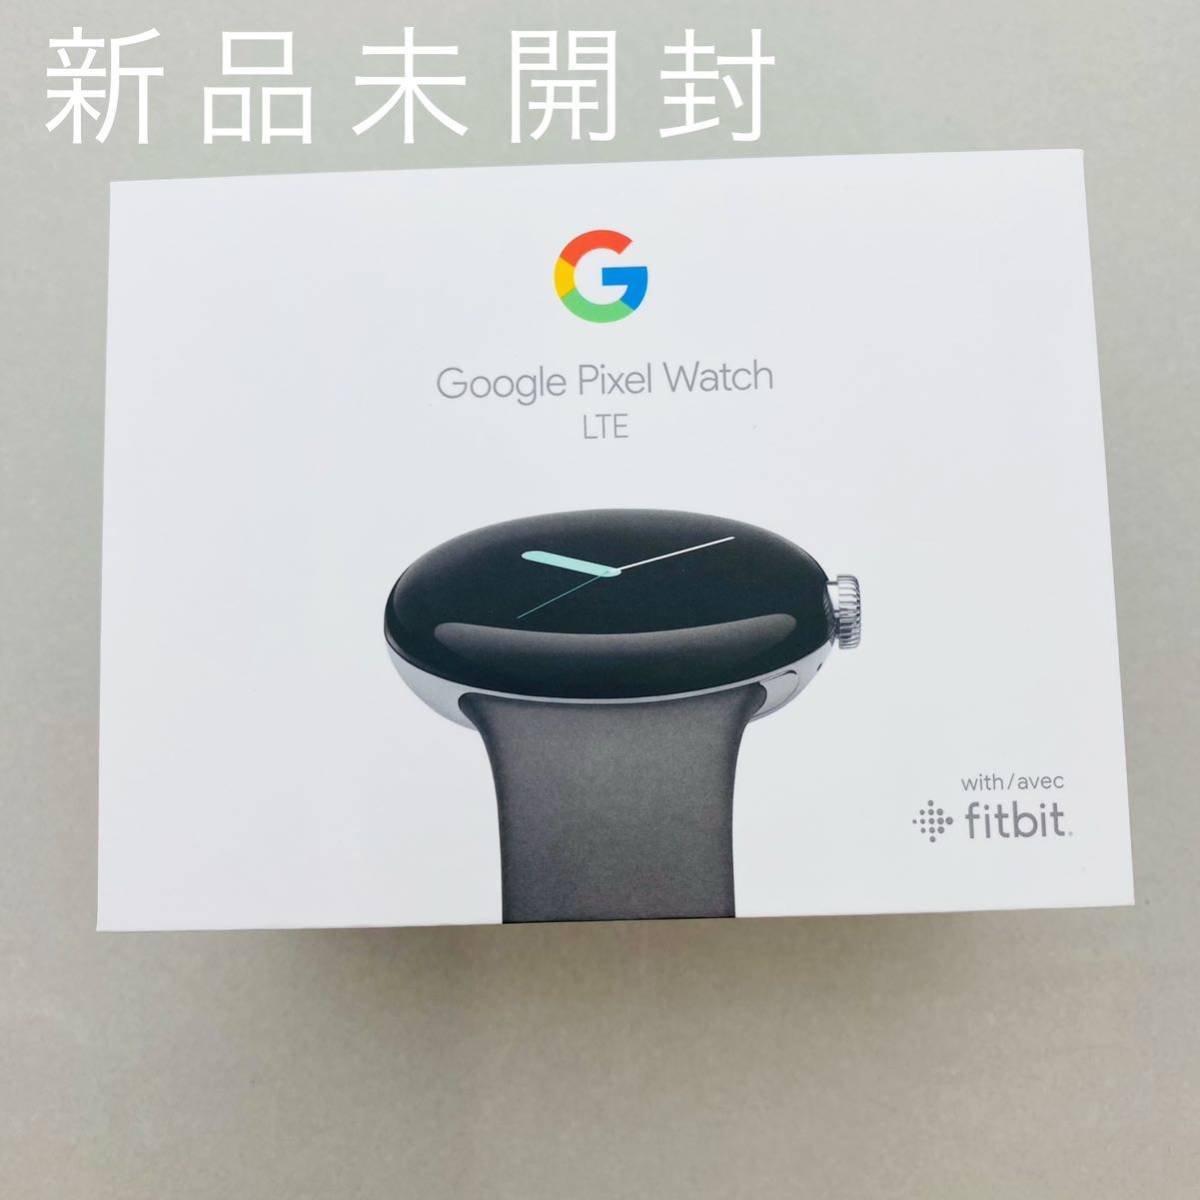 スーパーセール期間限定 Google Pixel Watch LTE スマートウォッチ本体